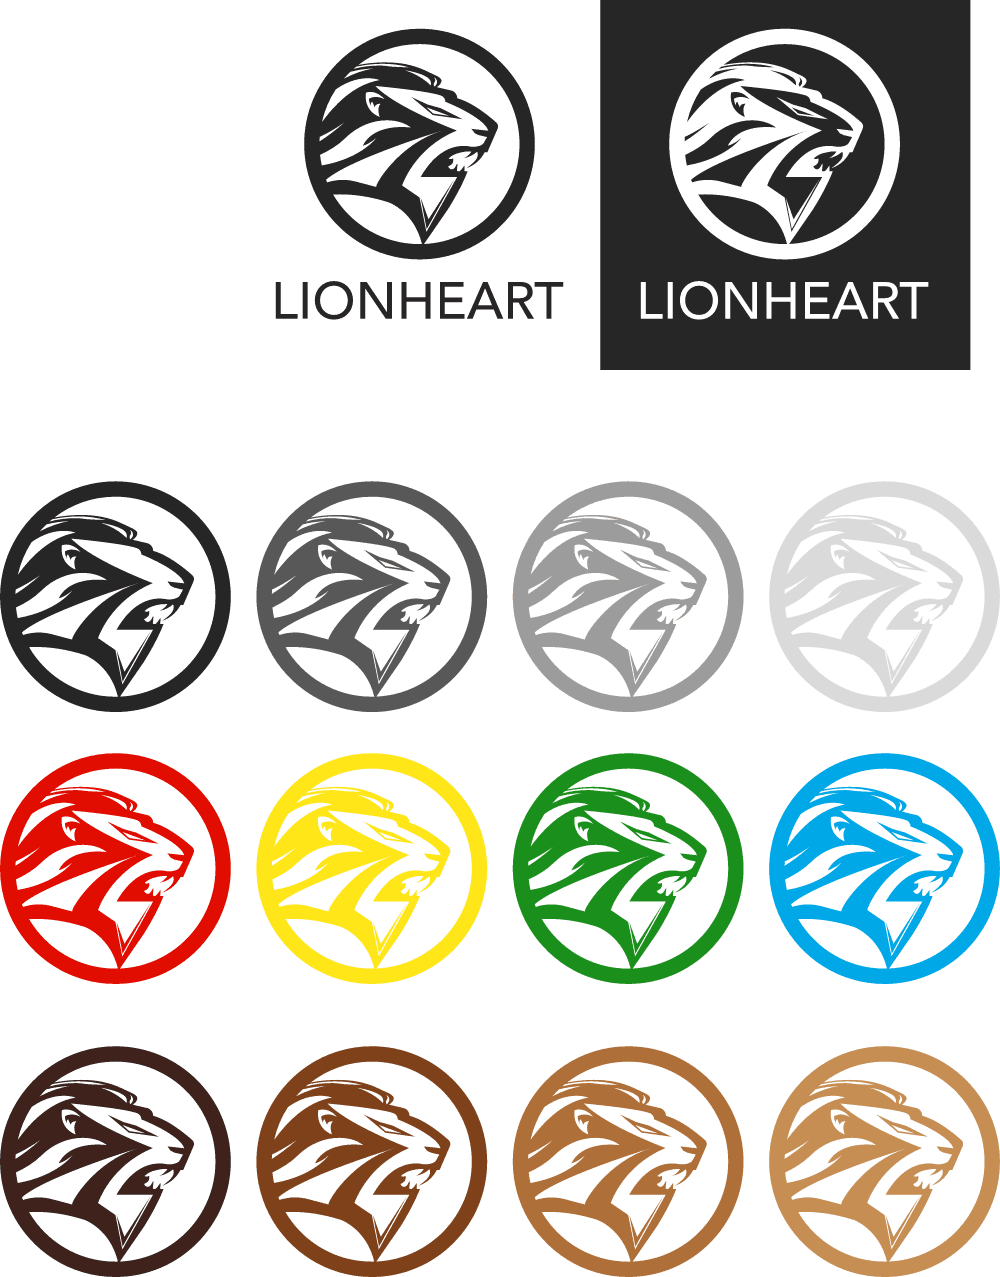 Lionheart Logo download